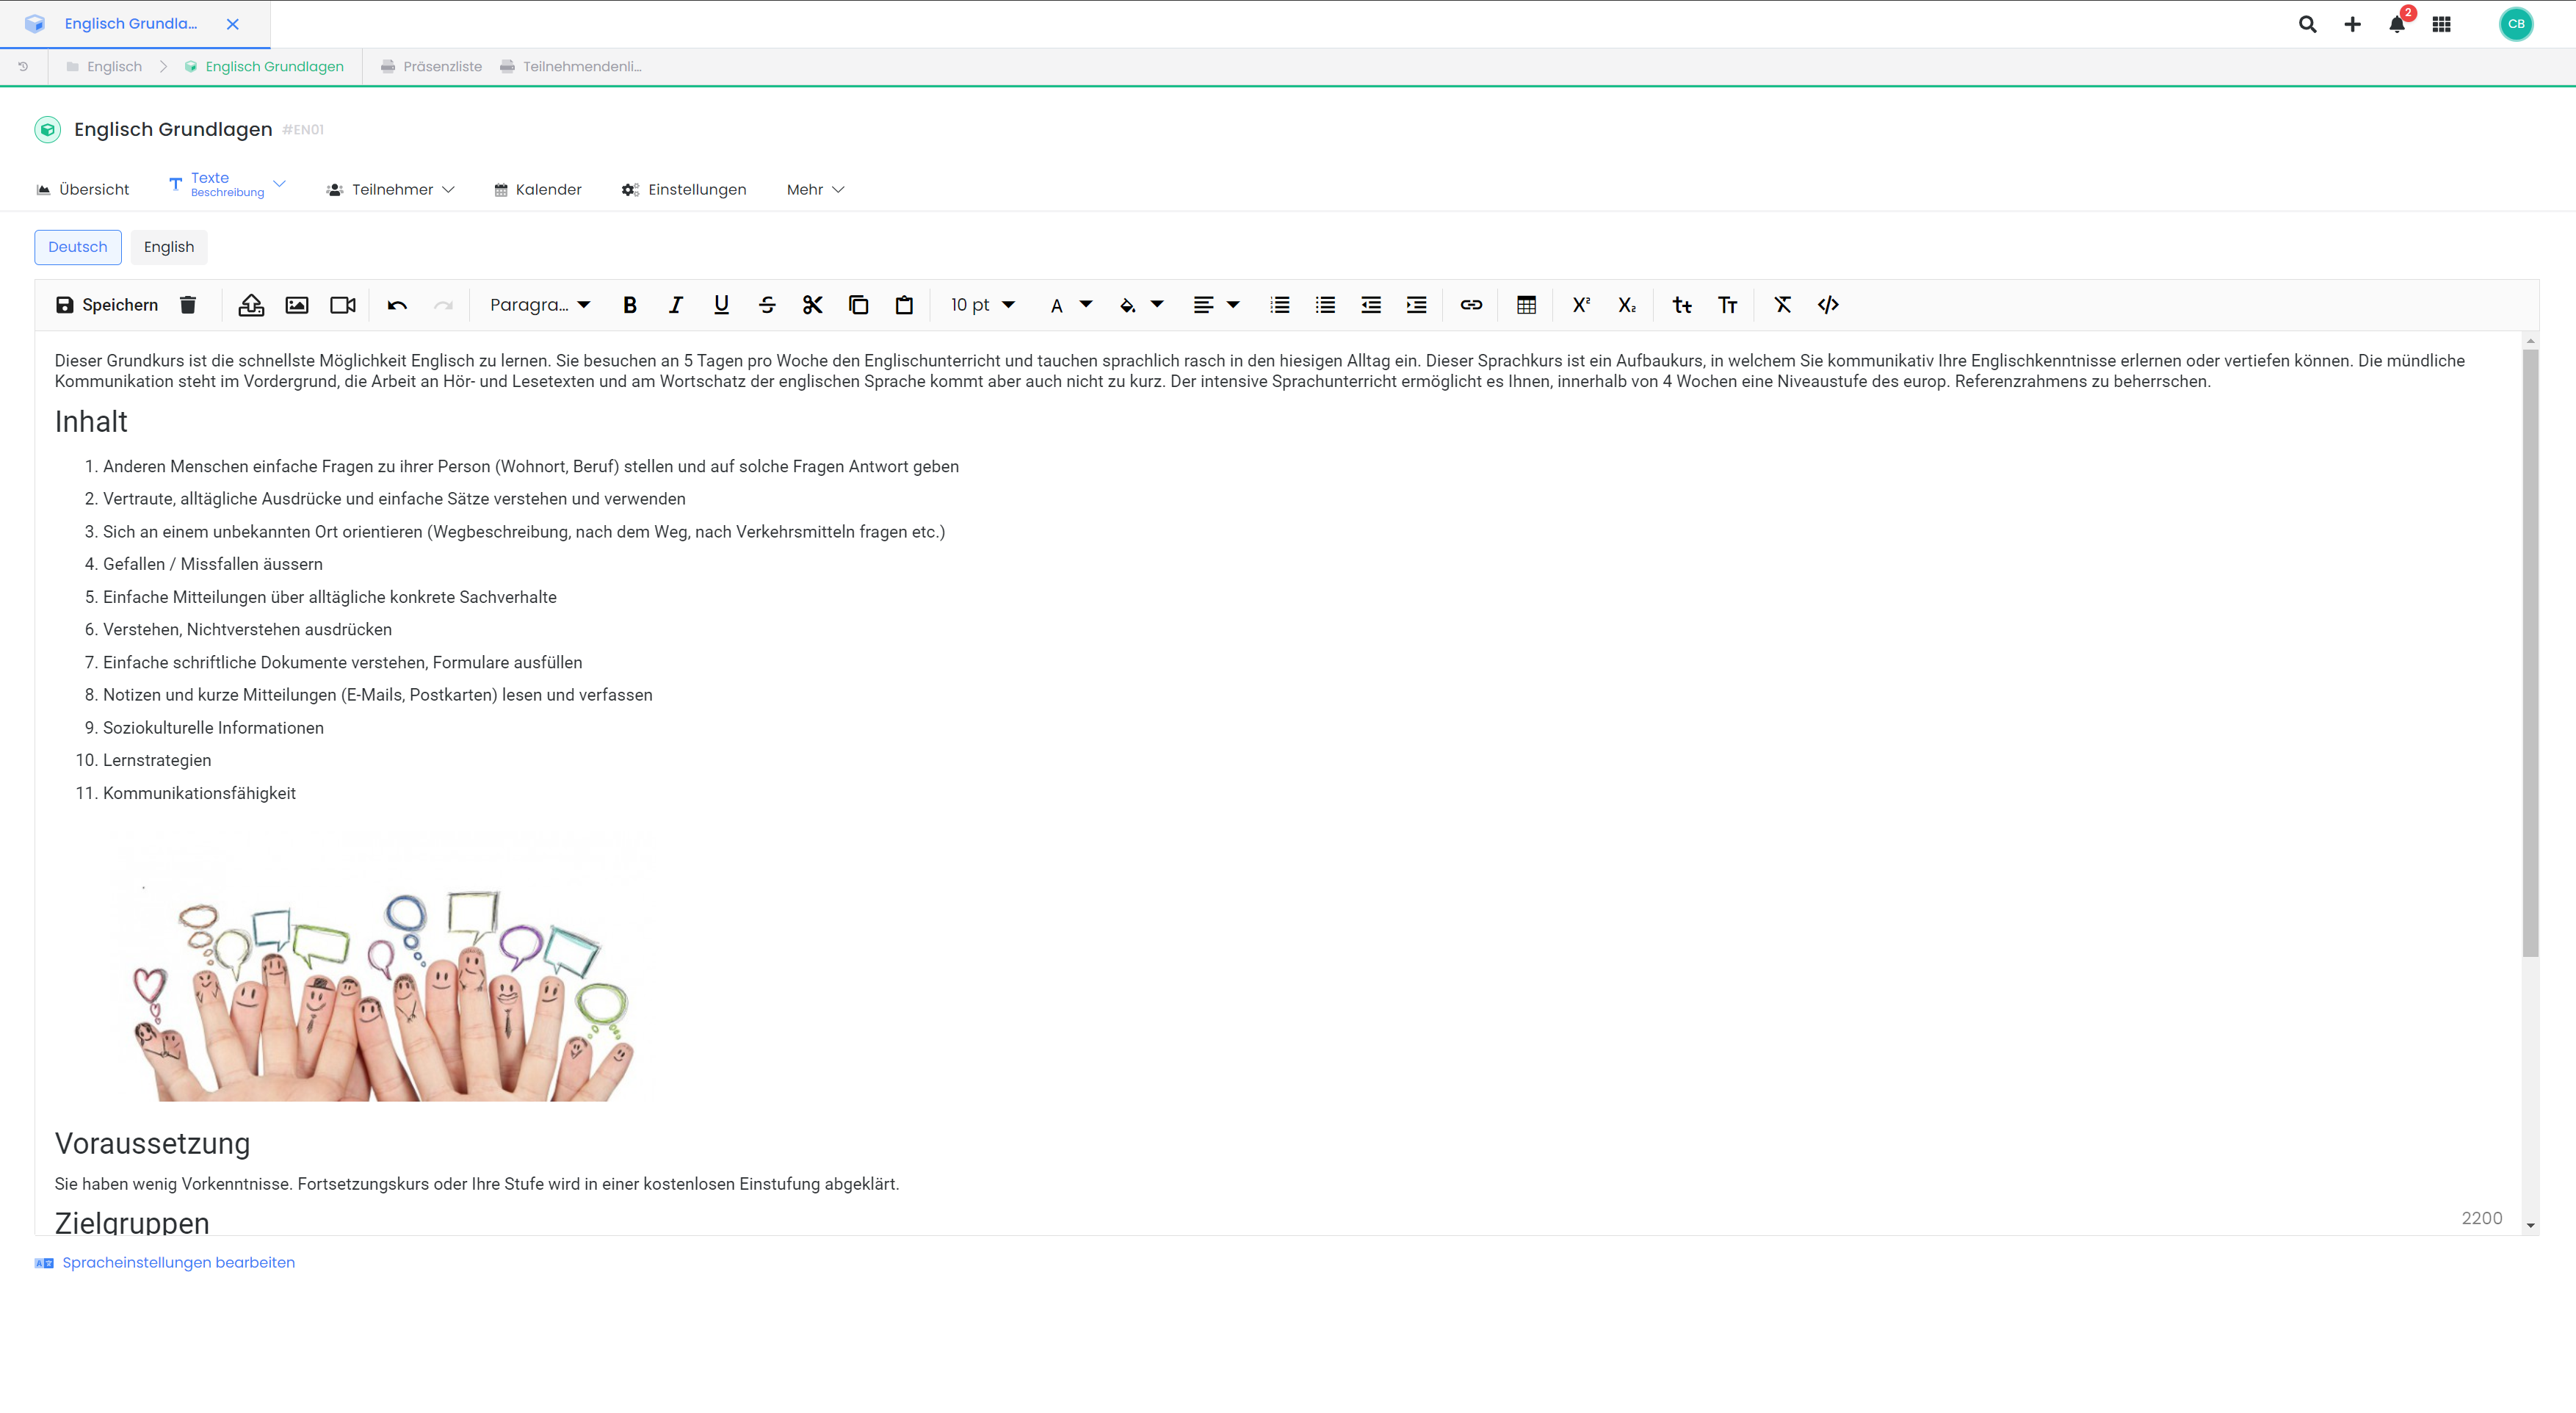 Dieser Screenshot zeigt die Benutzeroberfläche von edoobox, dem Online-Buchungssystem. Es wird der Texteditor eines Angebots gezeigt, bei dem ein Beschreibungstext hinterlegt werden kann.